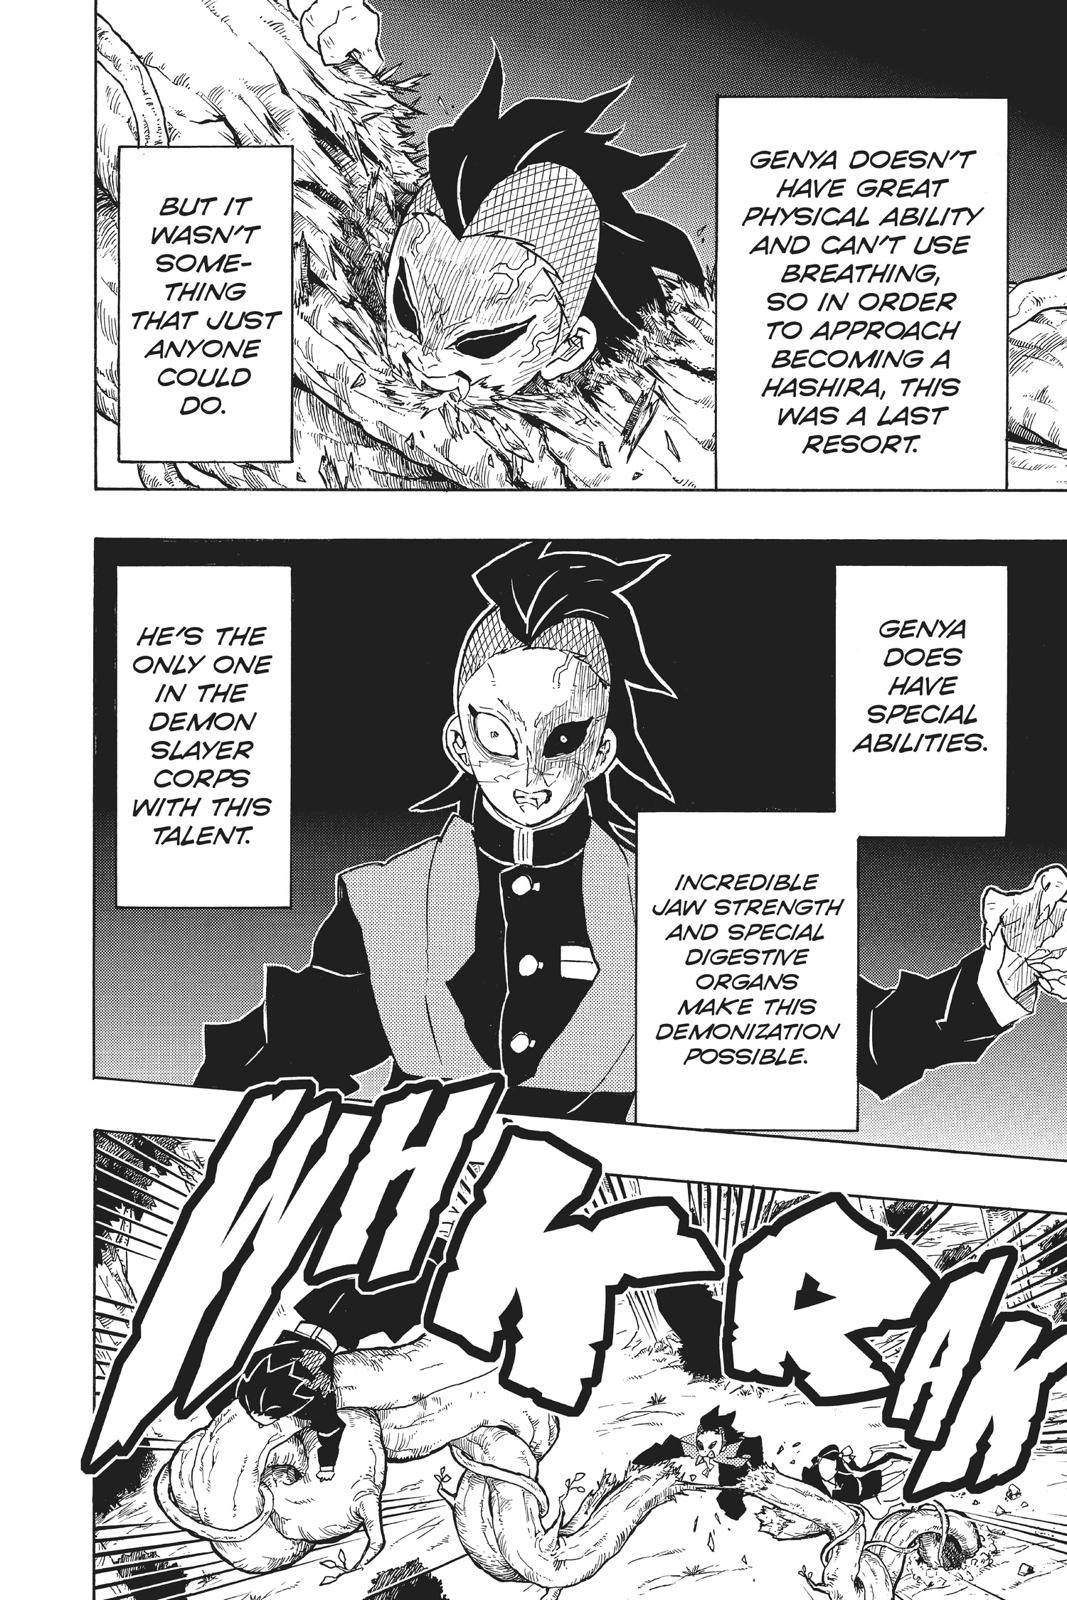 Demon Slayer Manga Manga Chapter - 124 - image 11